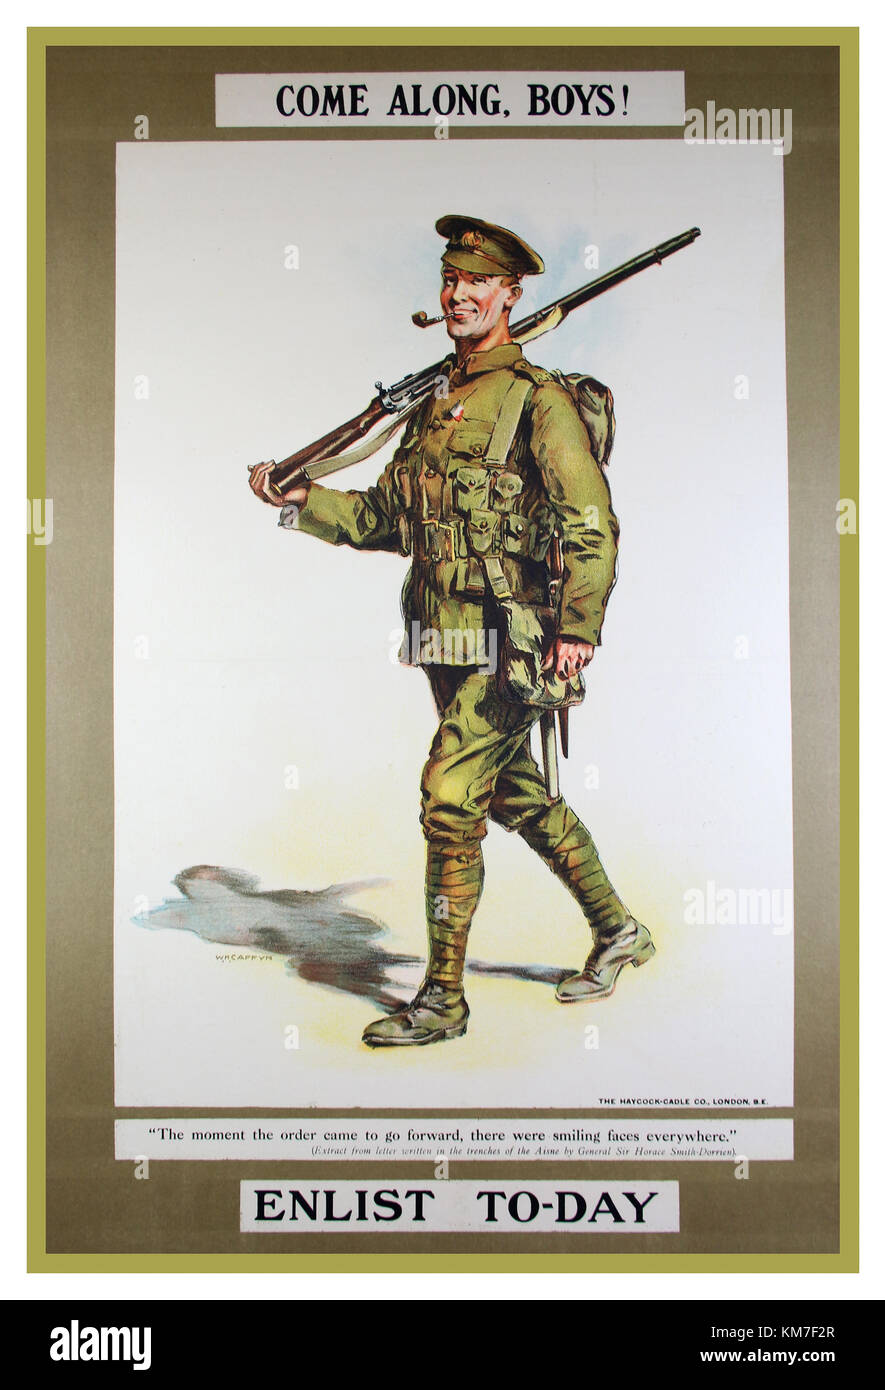 Affiches de propagande de la PREMIÈRE GUERRE MONDIALE de recrutement Vintage British 'Venez le long de Boys' enrôler aujourd'affiches de guerre de l'Armée de la Première Guerre mondiale 1 Banque D'Images